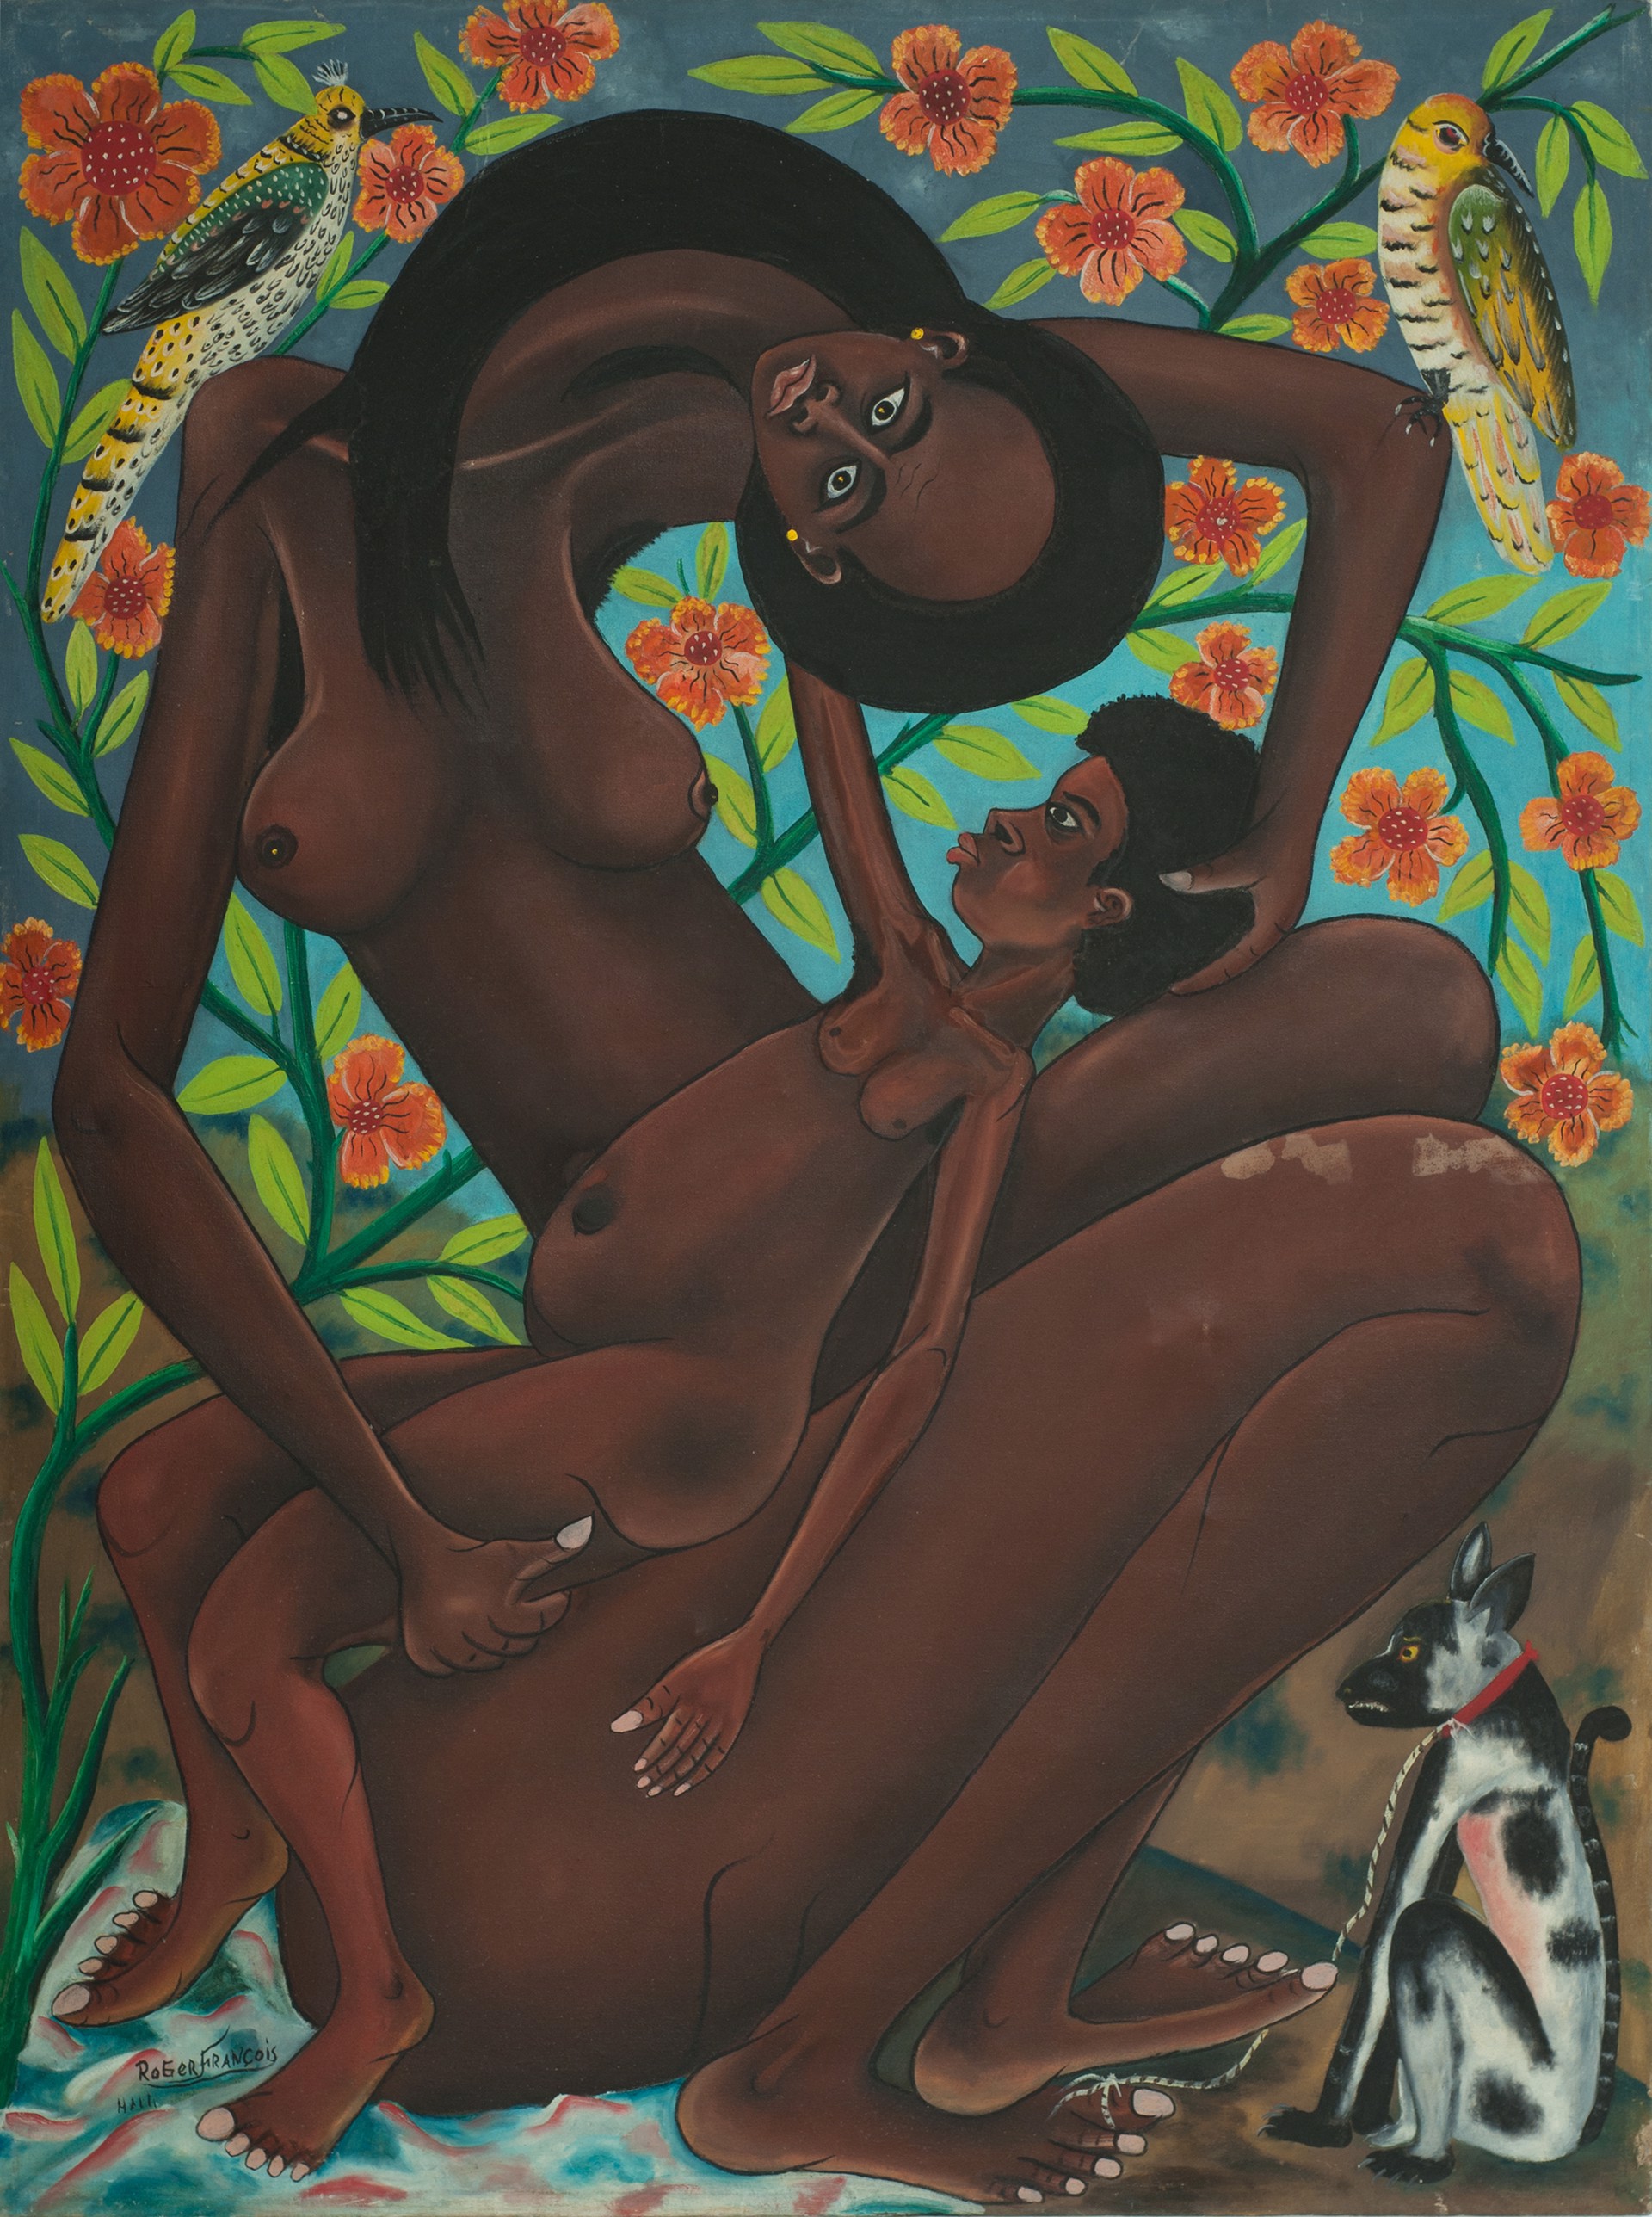 Mother & Child Bonding Time #5-4-90GSN by Roger Francois (Haitian, 1928-2013)